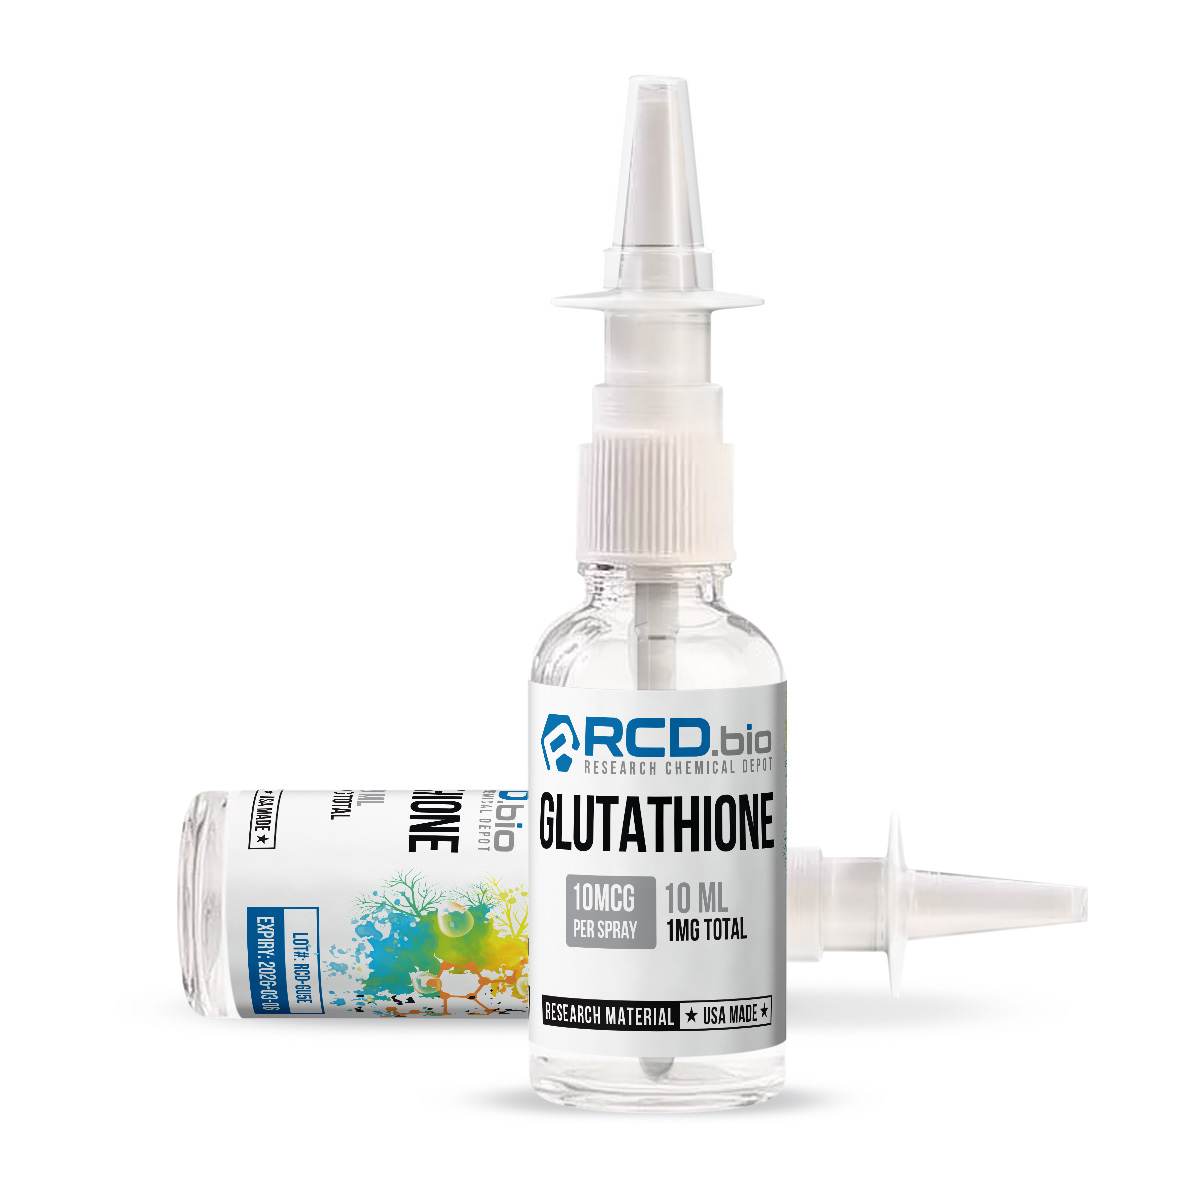 Glutathione Nasal Spray For Sale | Fast Shipping | RCD.bio